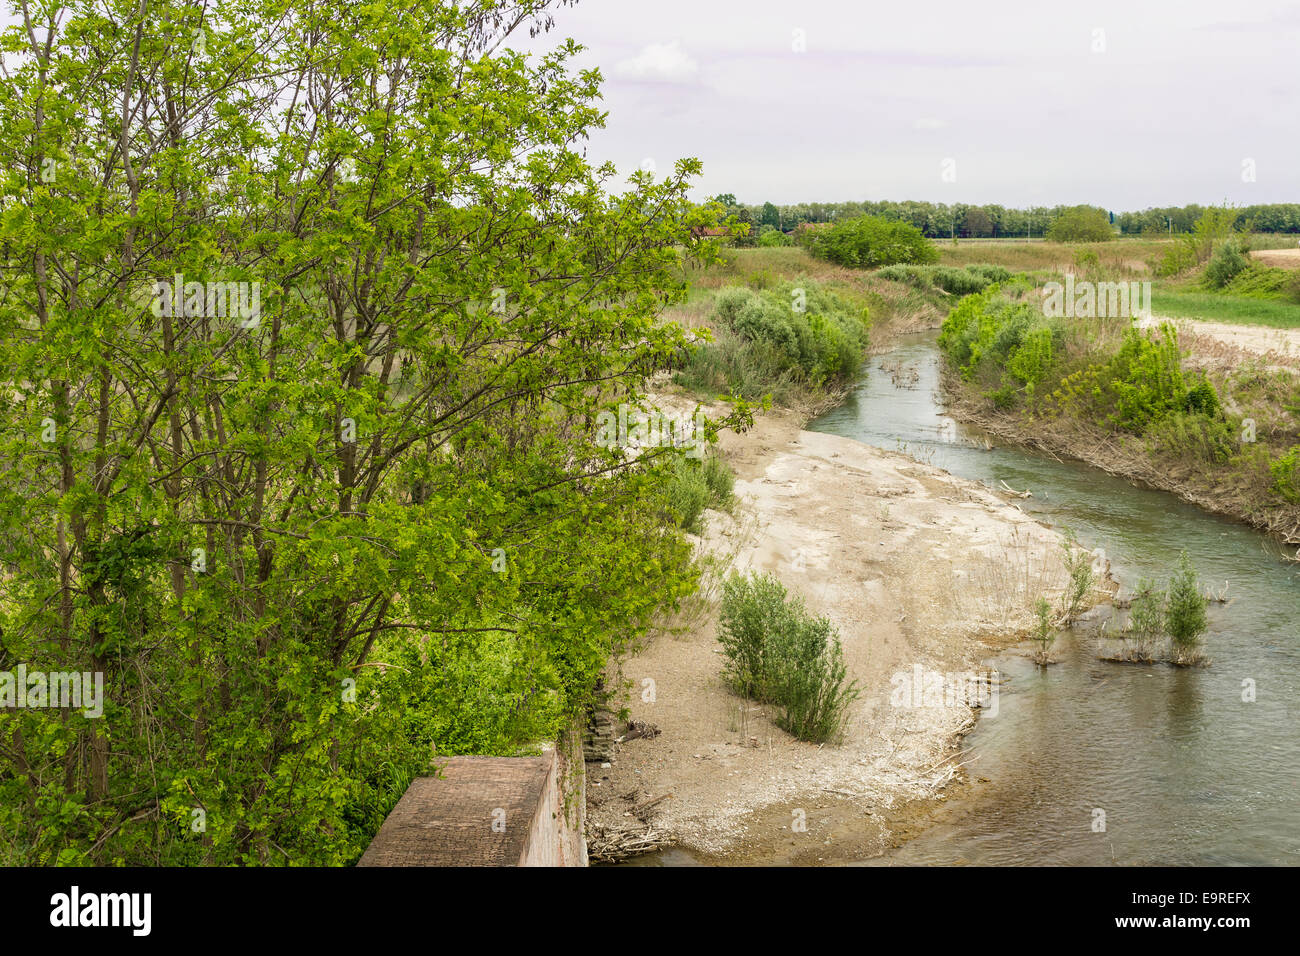 Les arbres et les mauvaises herbes sur la rivière Senio près de Cotignola dans la campagne italienne Banque D'Images